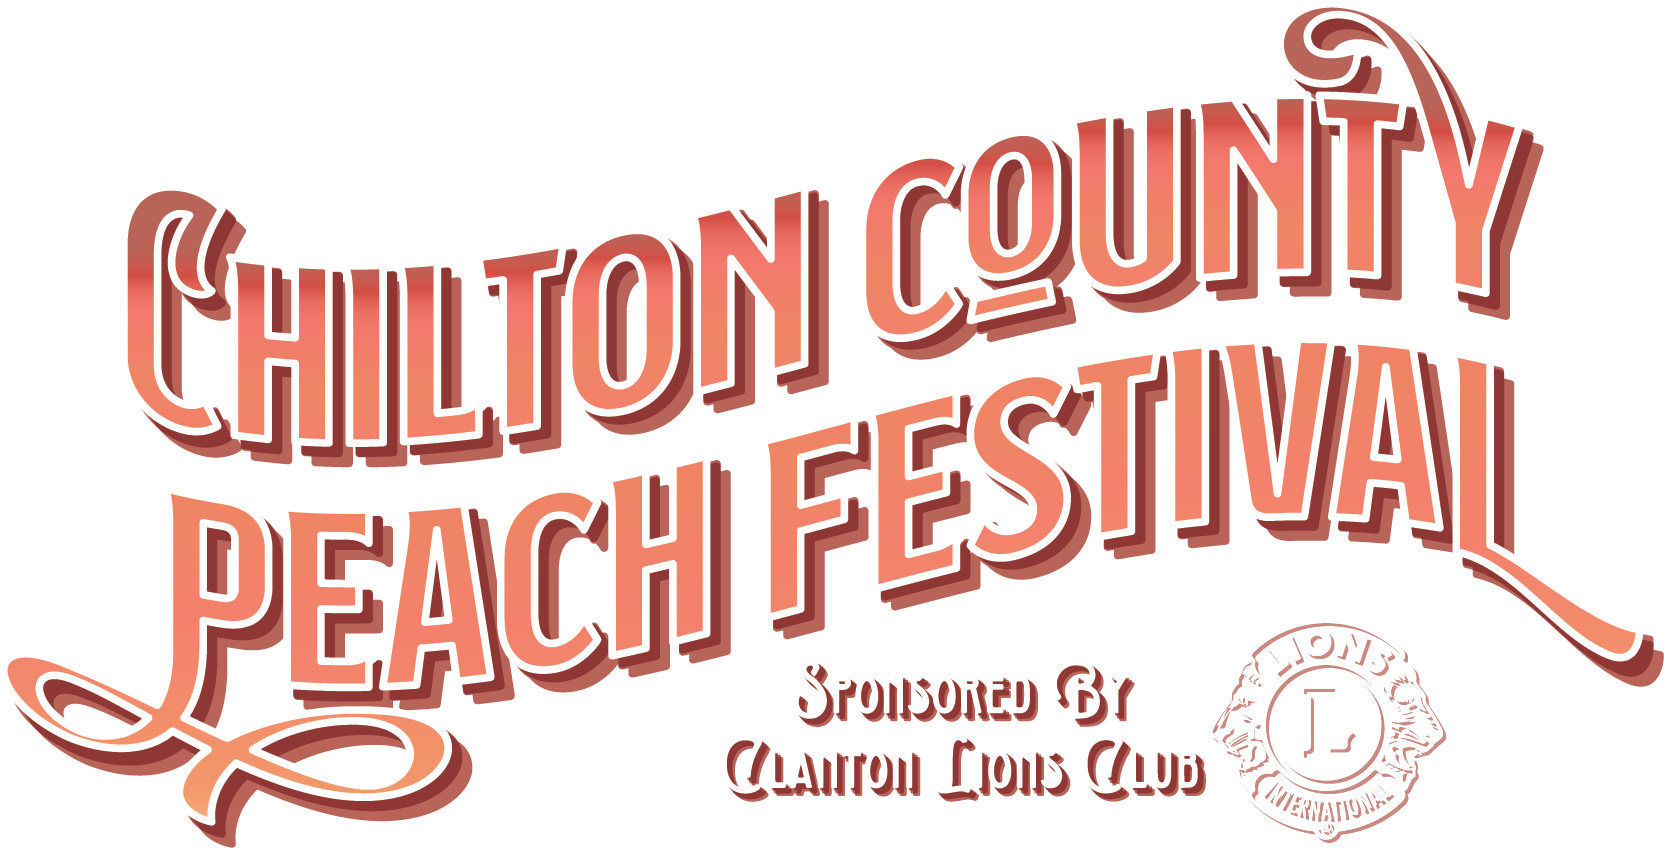 Chilton County Peach Festival Chilton County Peach Festival Shop